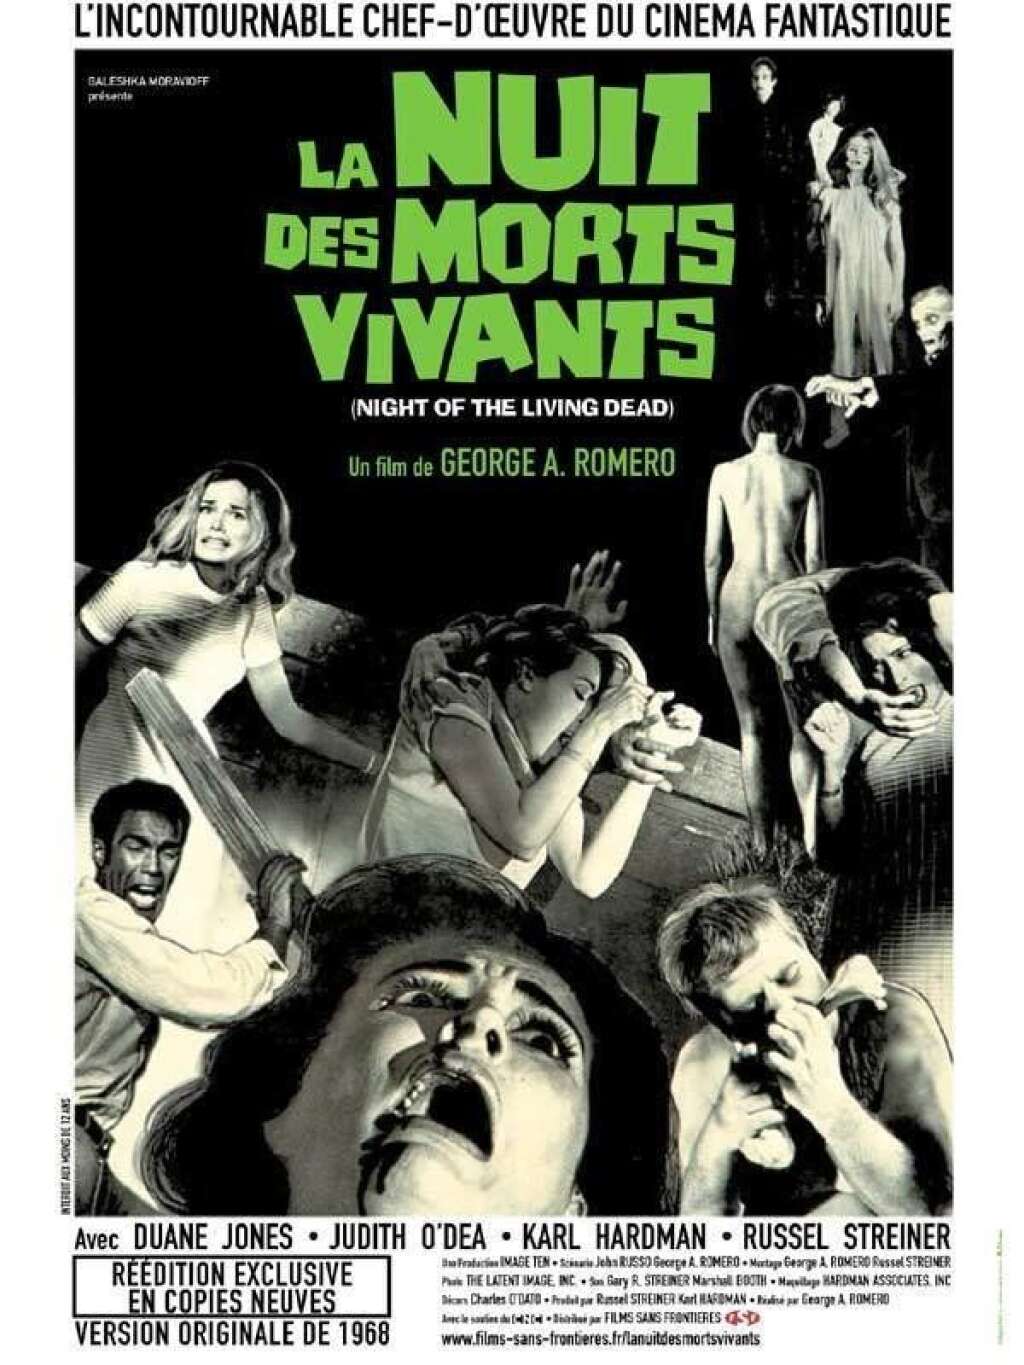 Le zombie vintage: La nuit des morts-vivants (1970) - Par George A. Romero avec Duane Jones, Judith O’Dea, Karl Hardman